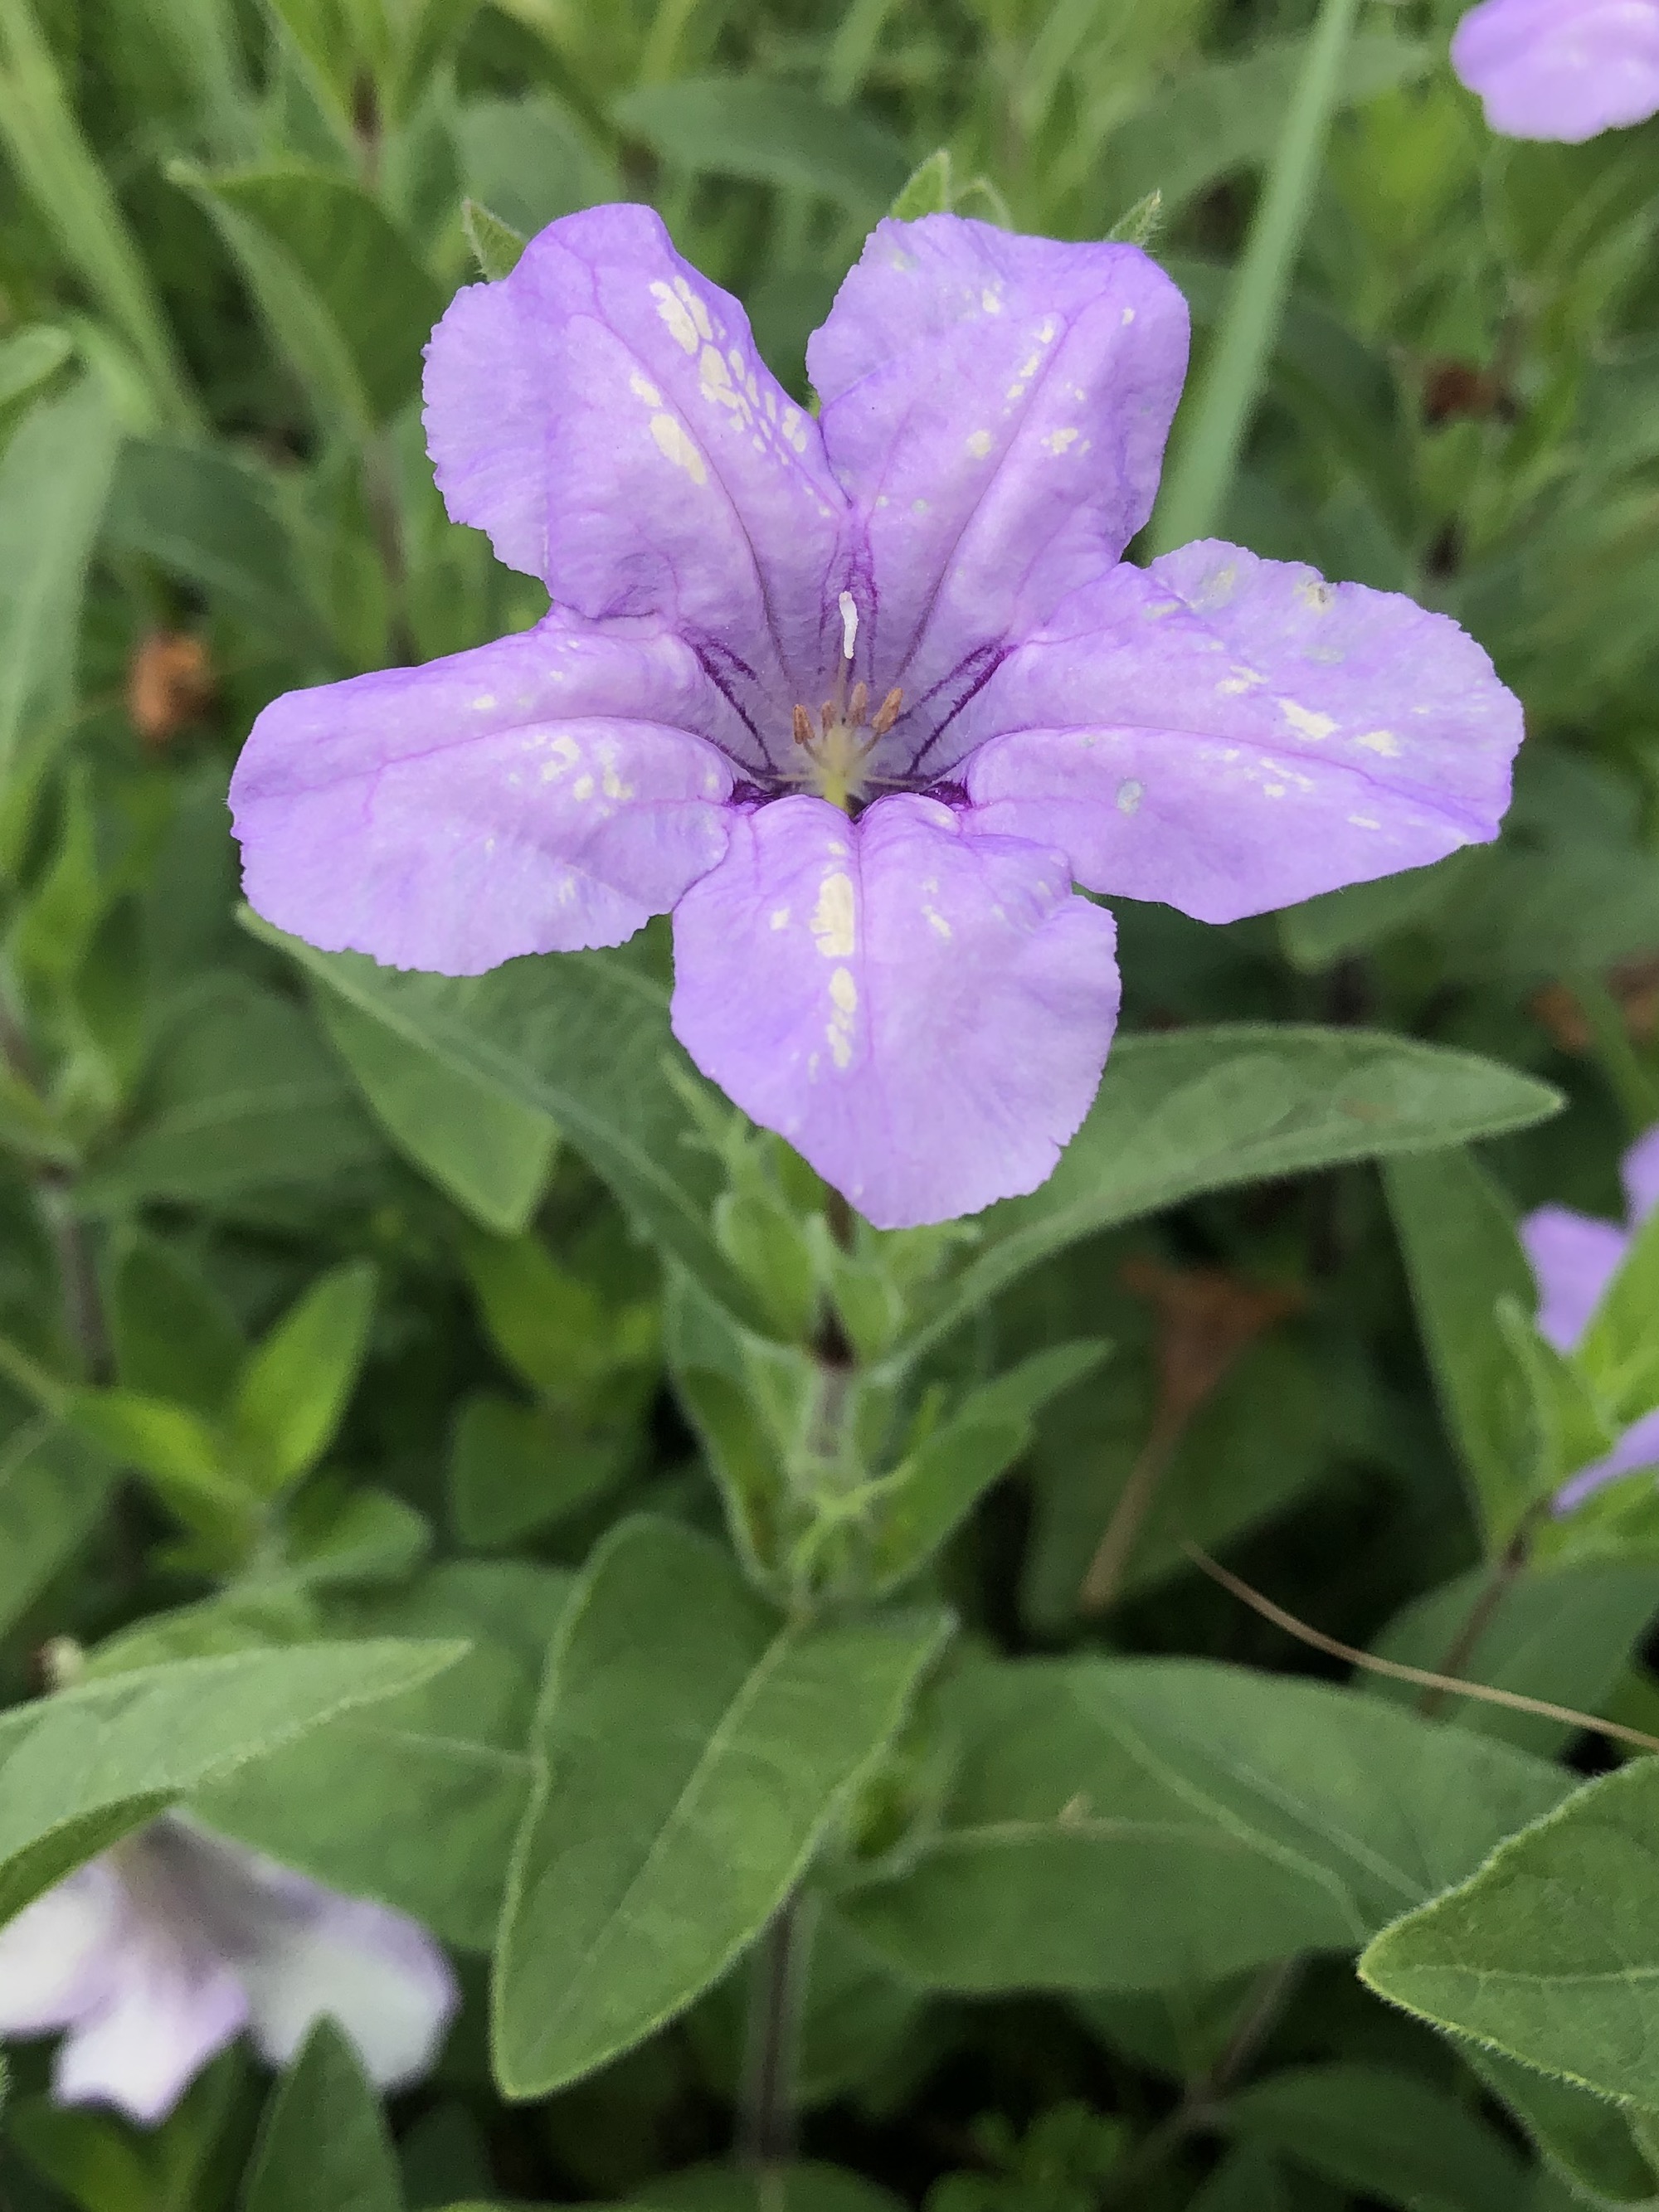 Wild Petunia in UW Arboretum Native Gardens in Madison, Wisconsin on June 30, 2021.